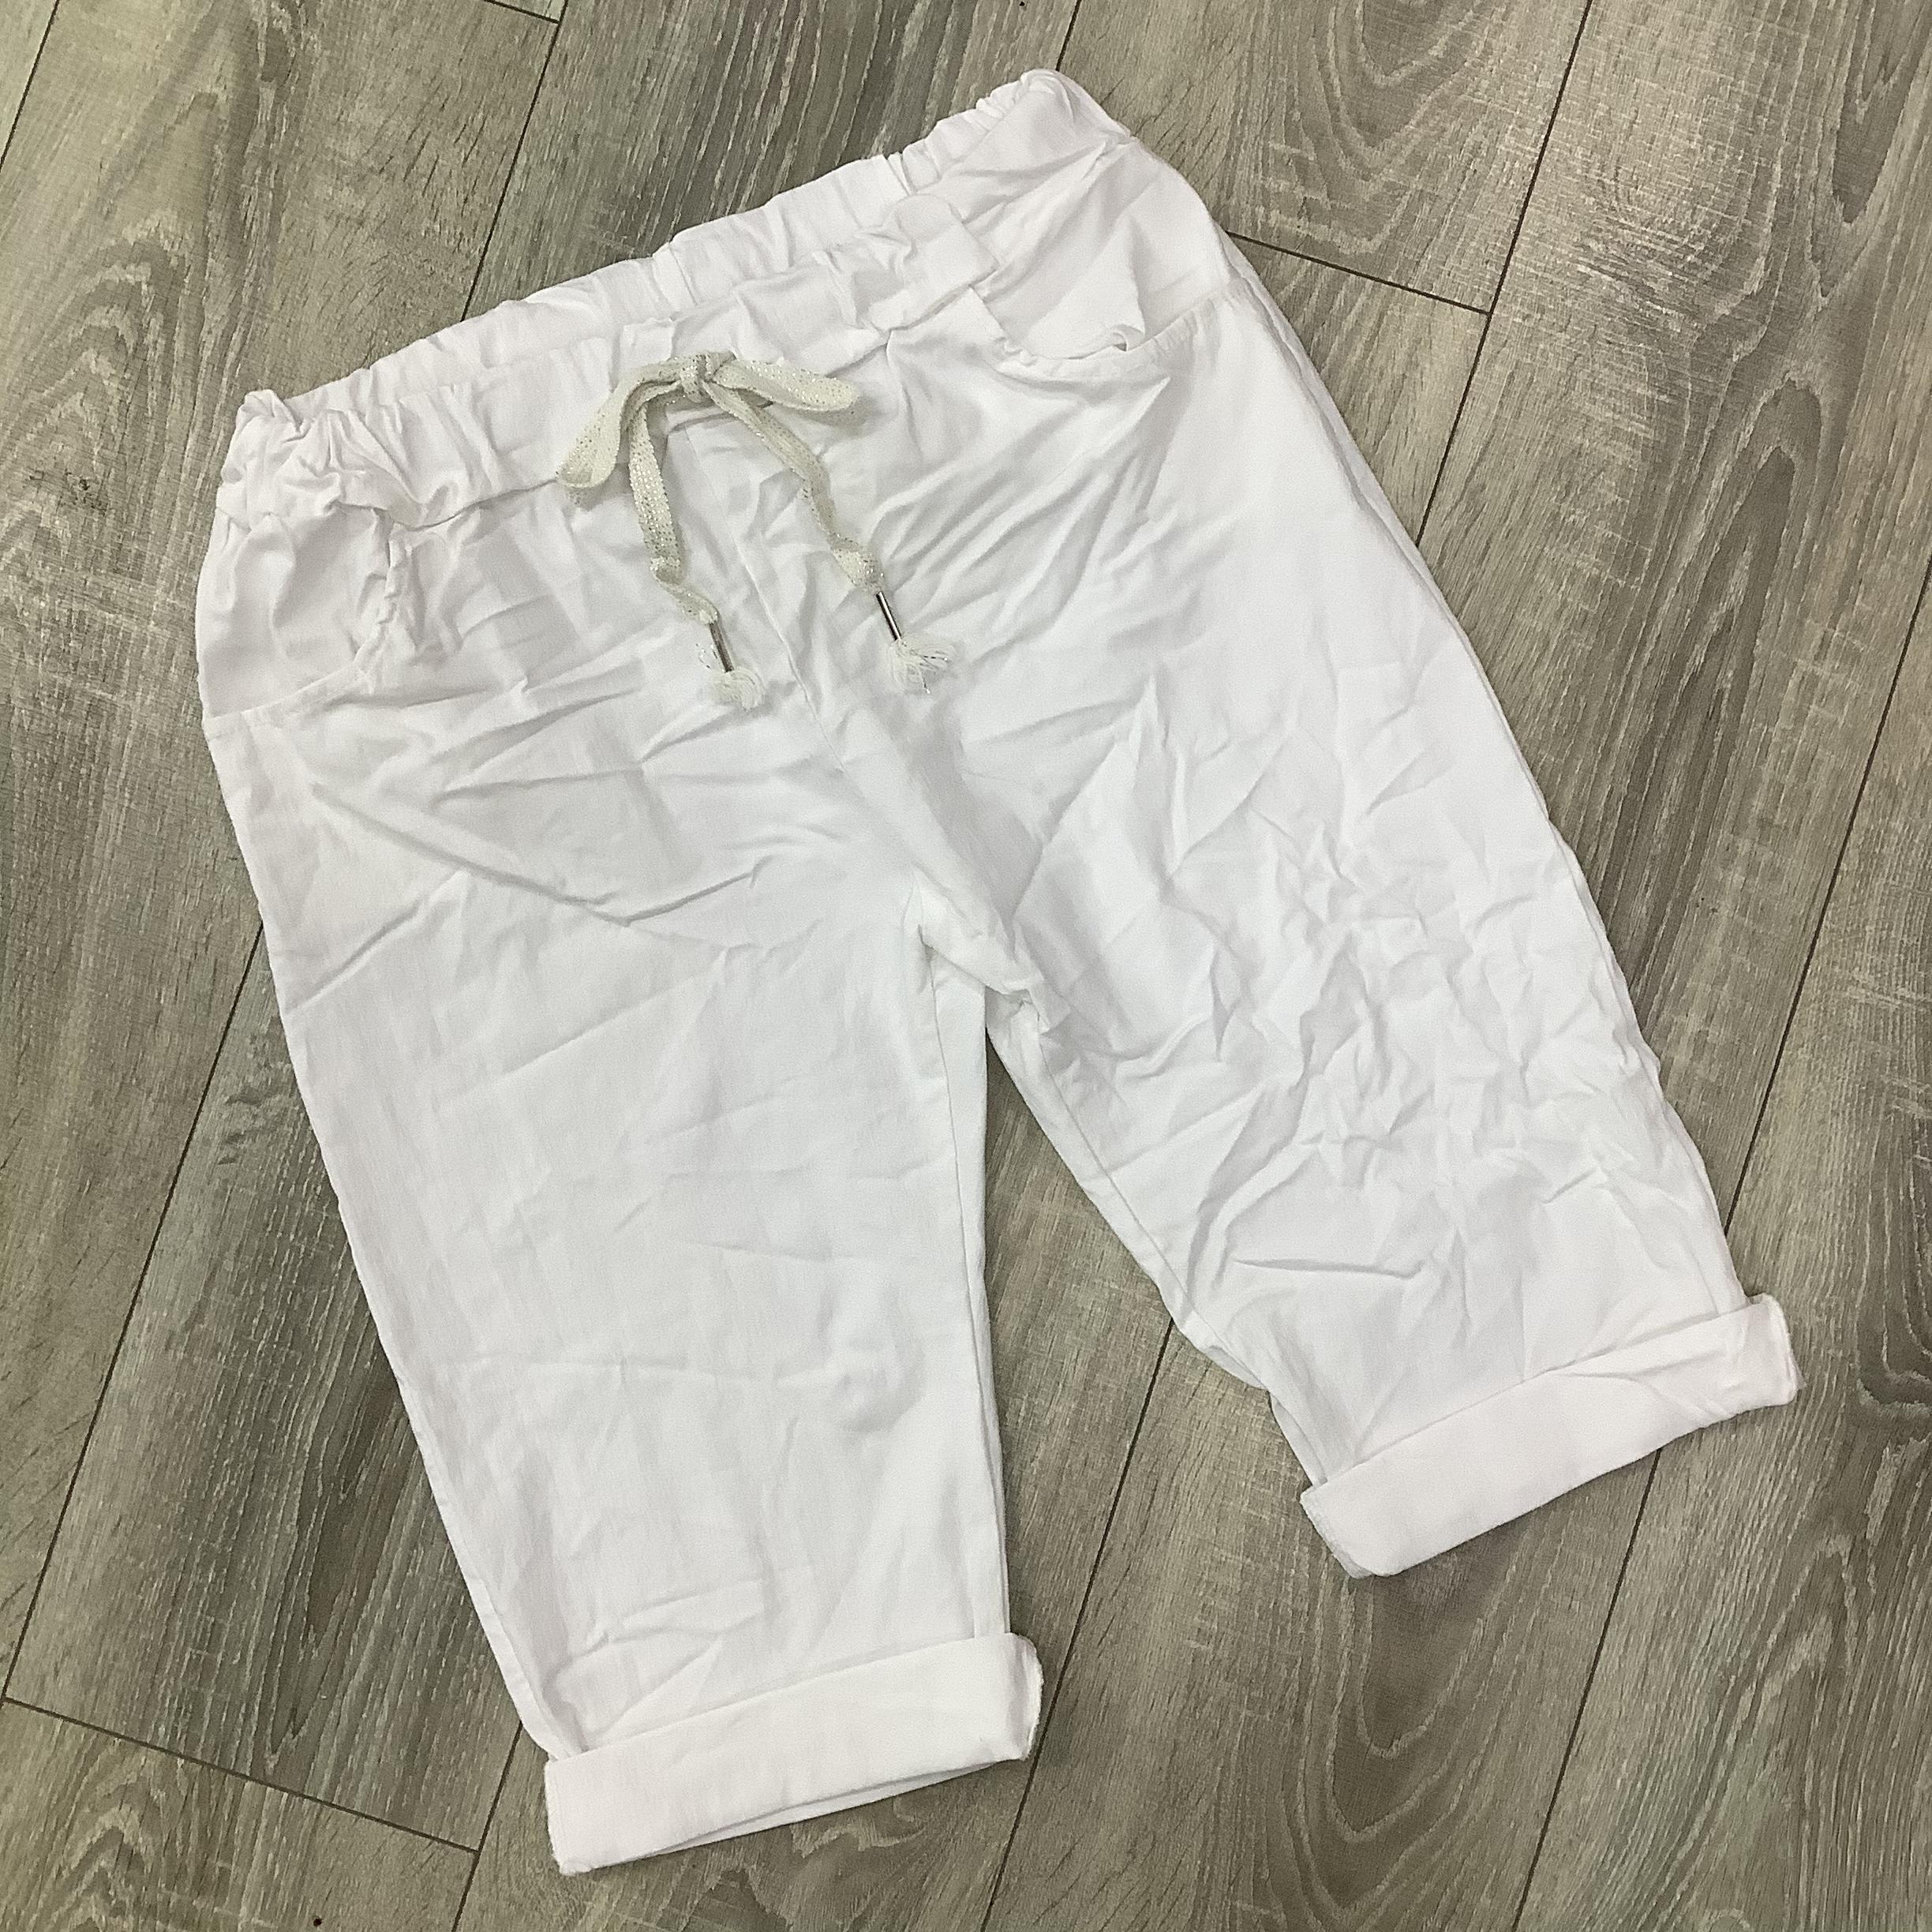 Magic shorts, 8-16, White